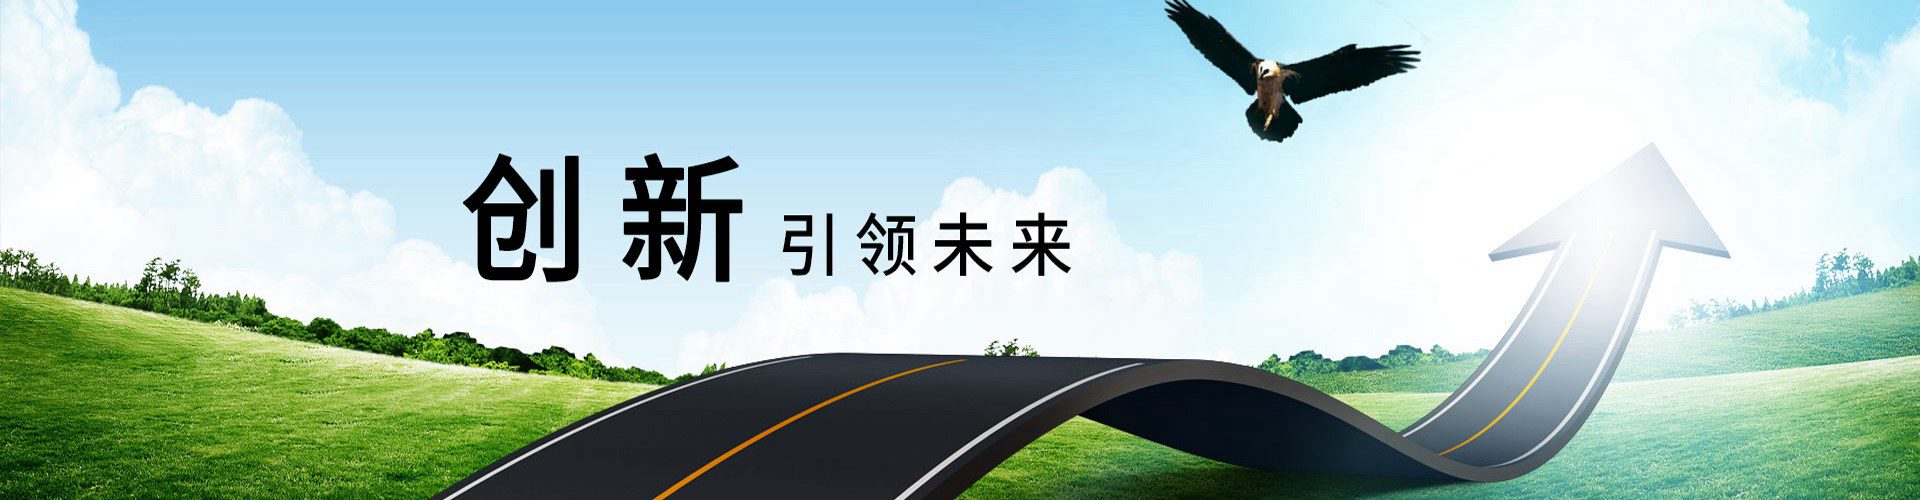 廣州珠江電纜banner